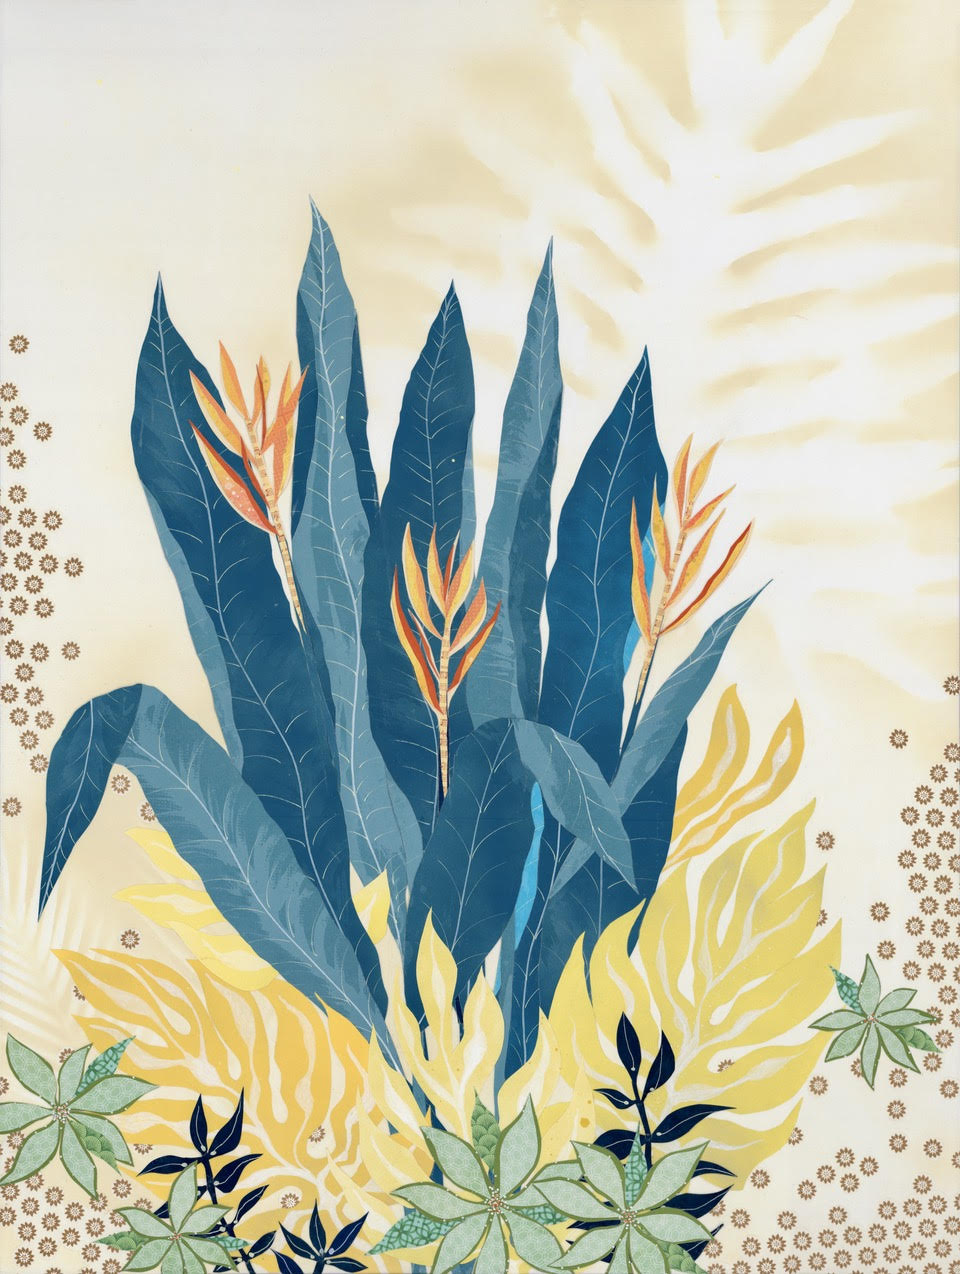 Botanical Art - "Wild Blue Yonder"